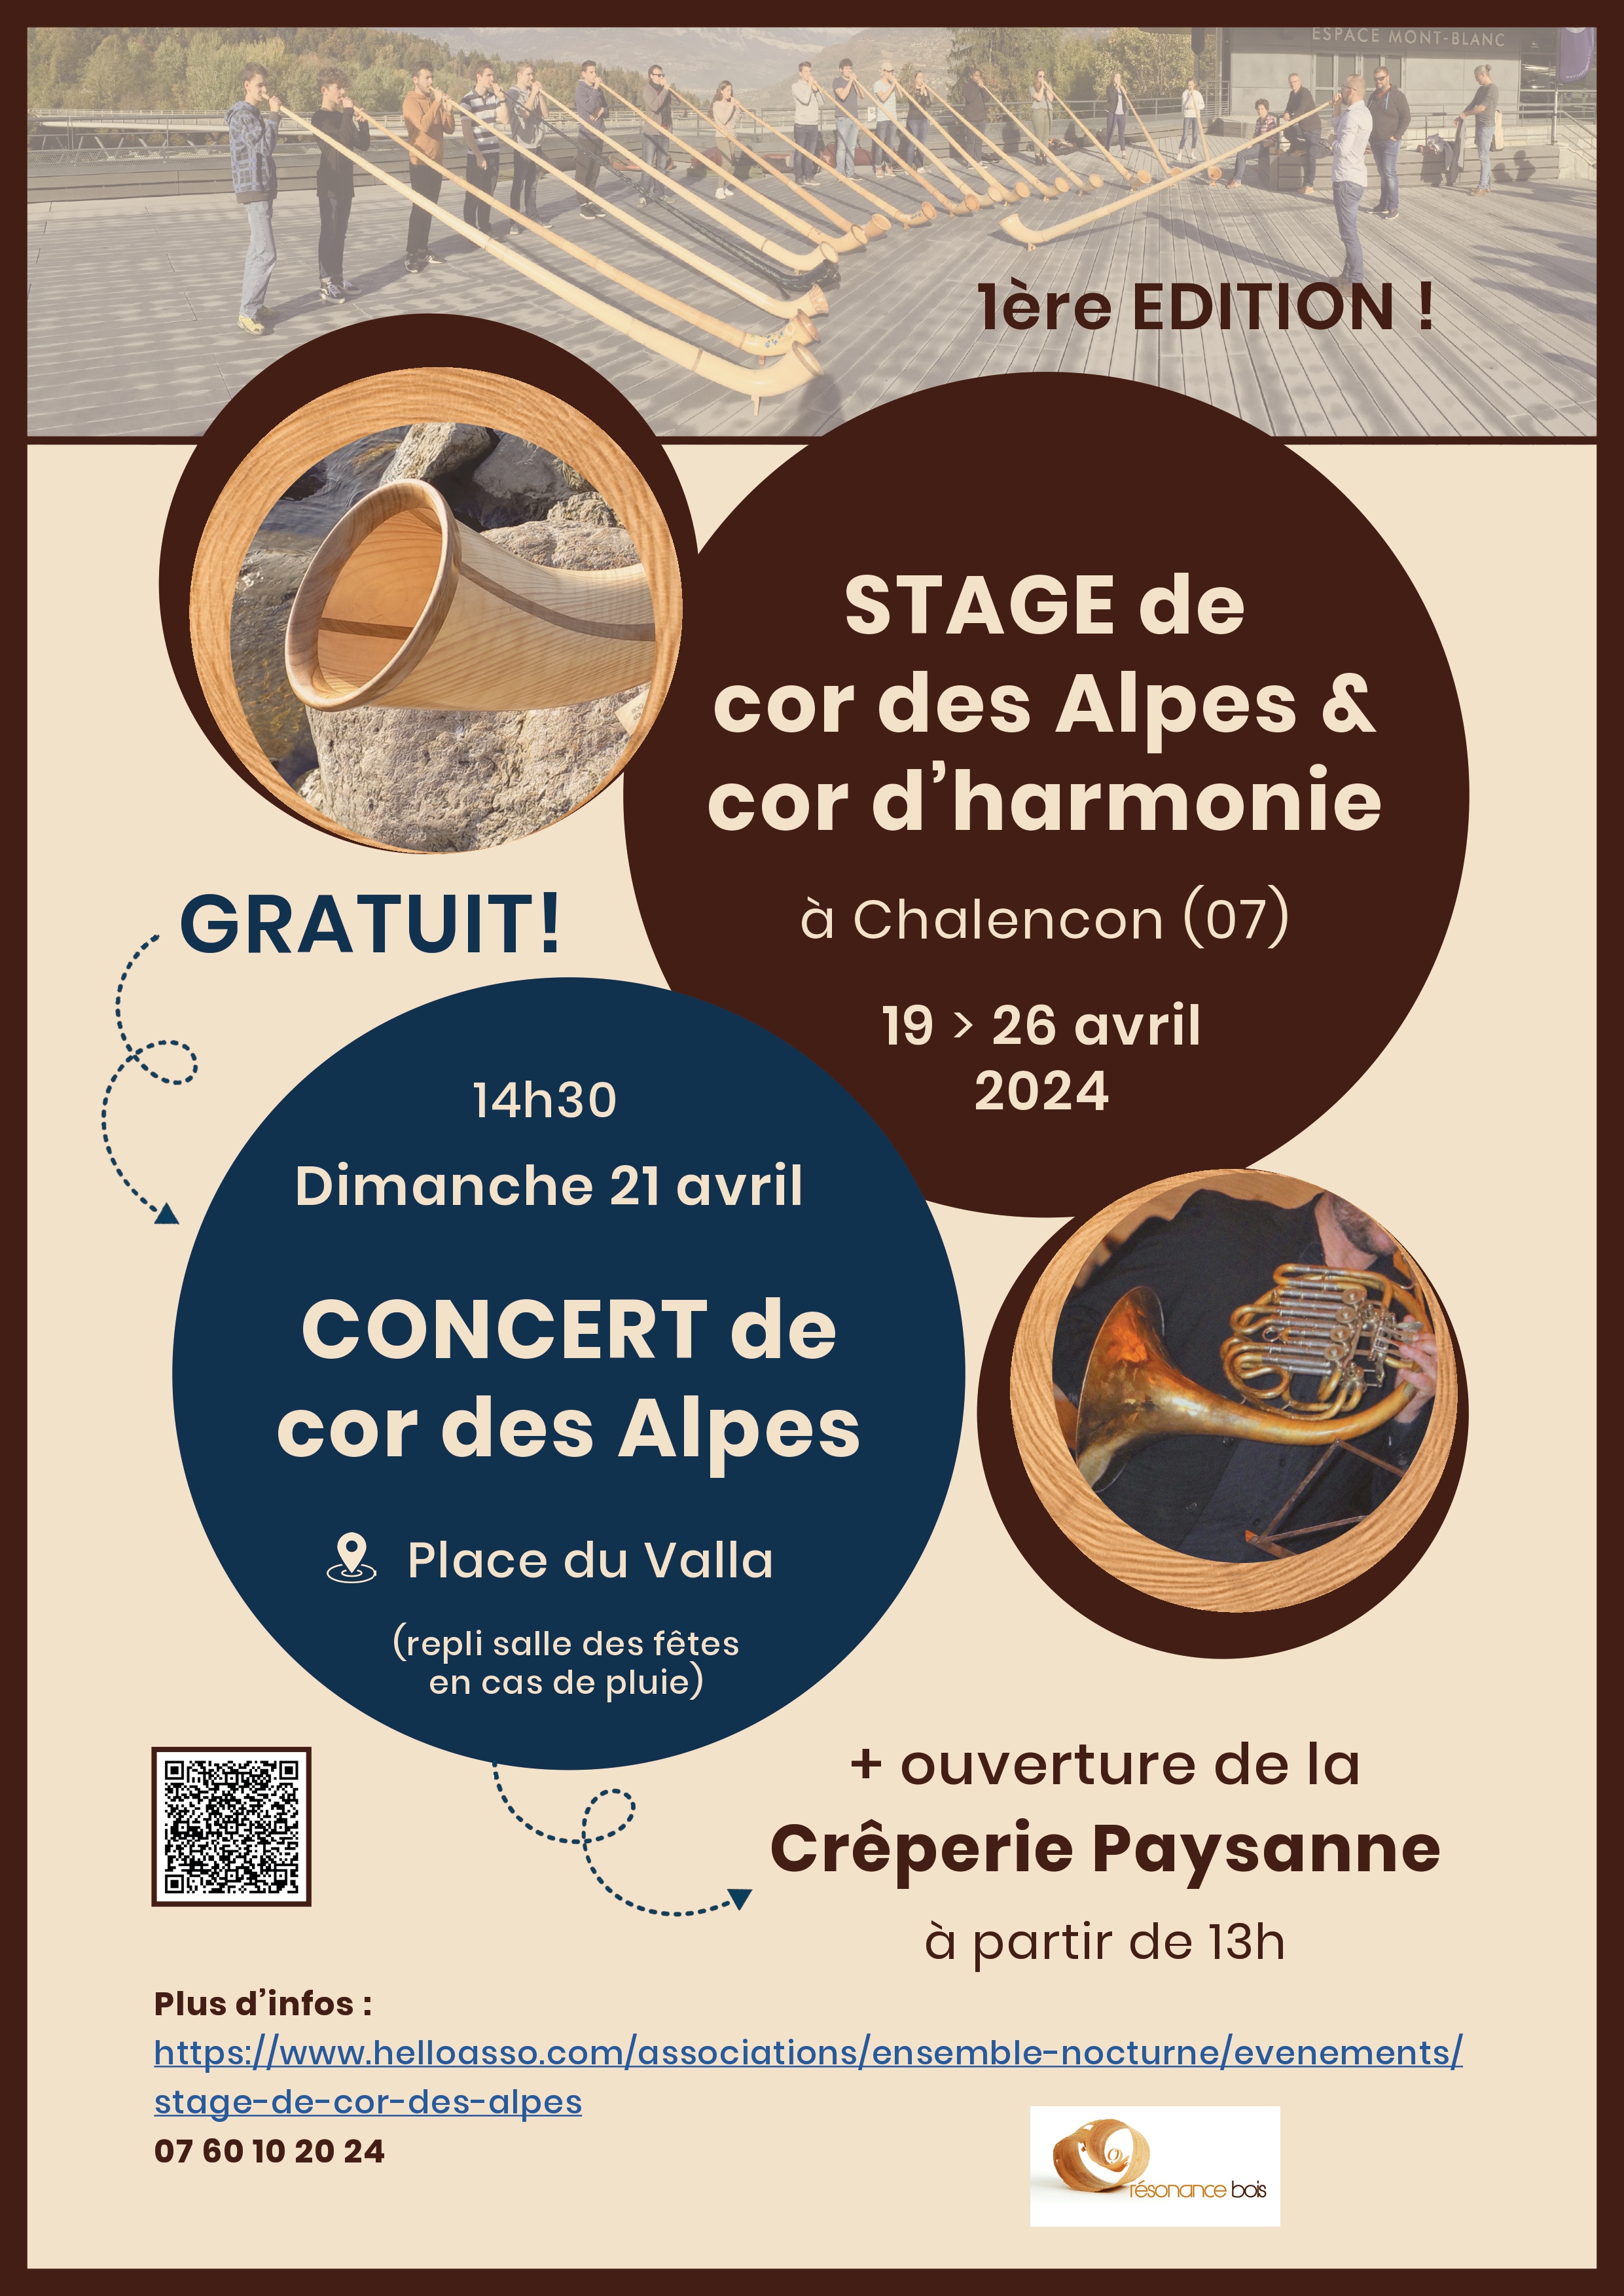 Alle leuke evenementen! : Concert de cor des Alpes